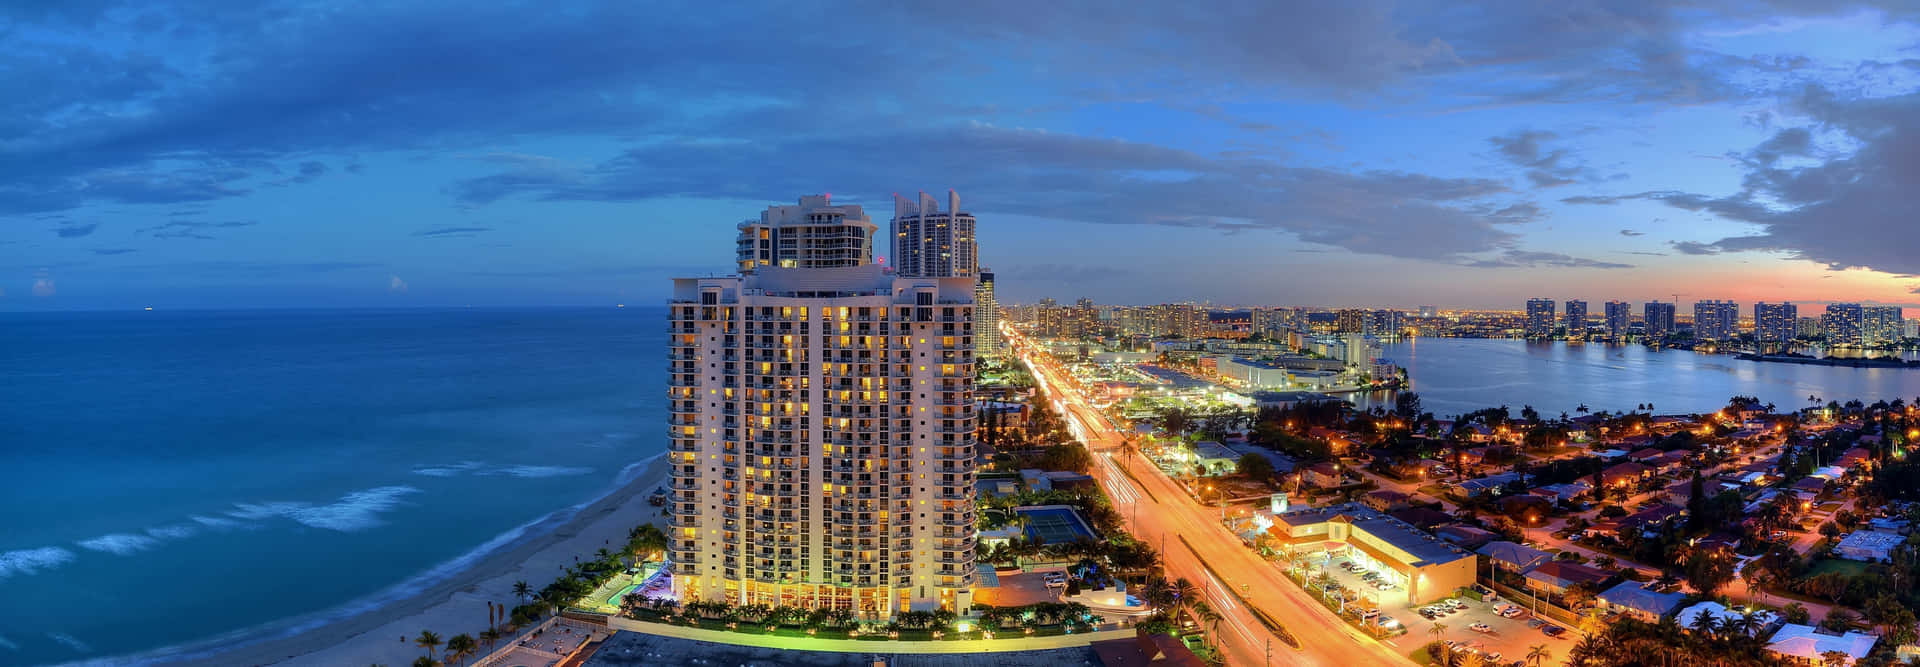 Miami Beach-billeder 4609 X 1600